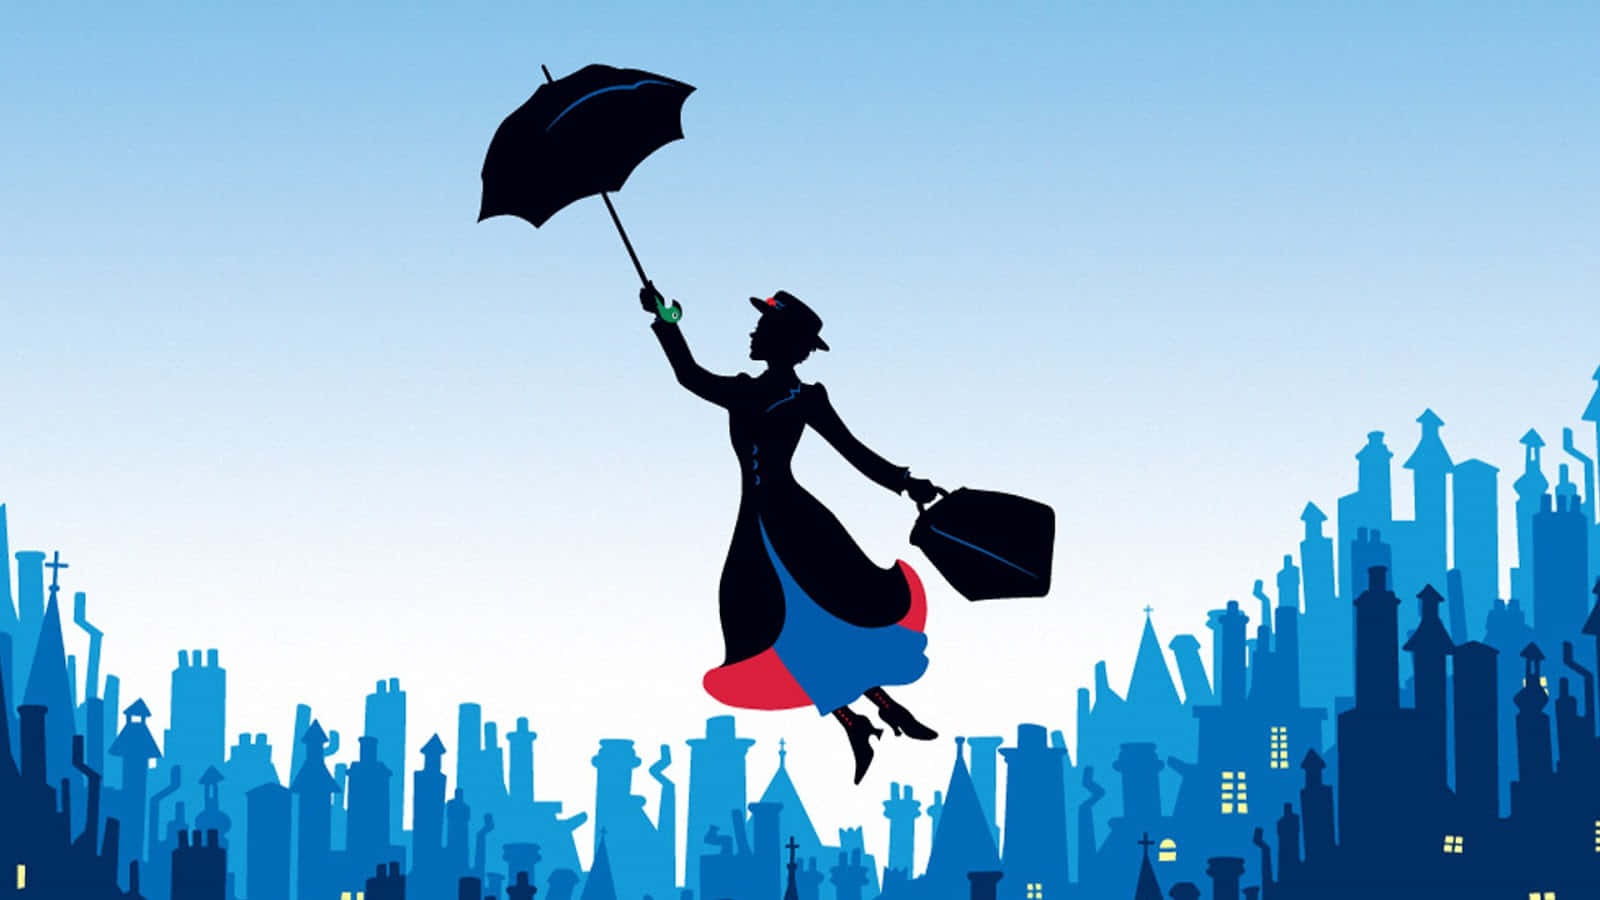 Captivating Mary Poppins Wallpaper Wallpaper